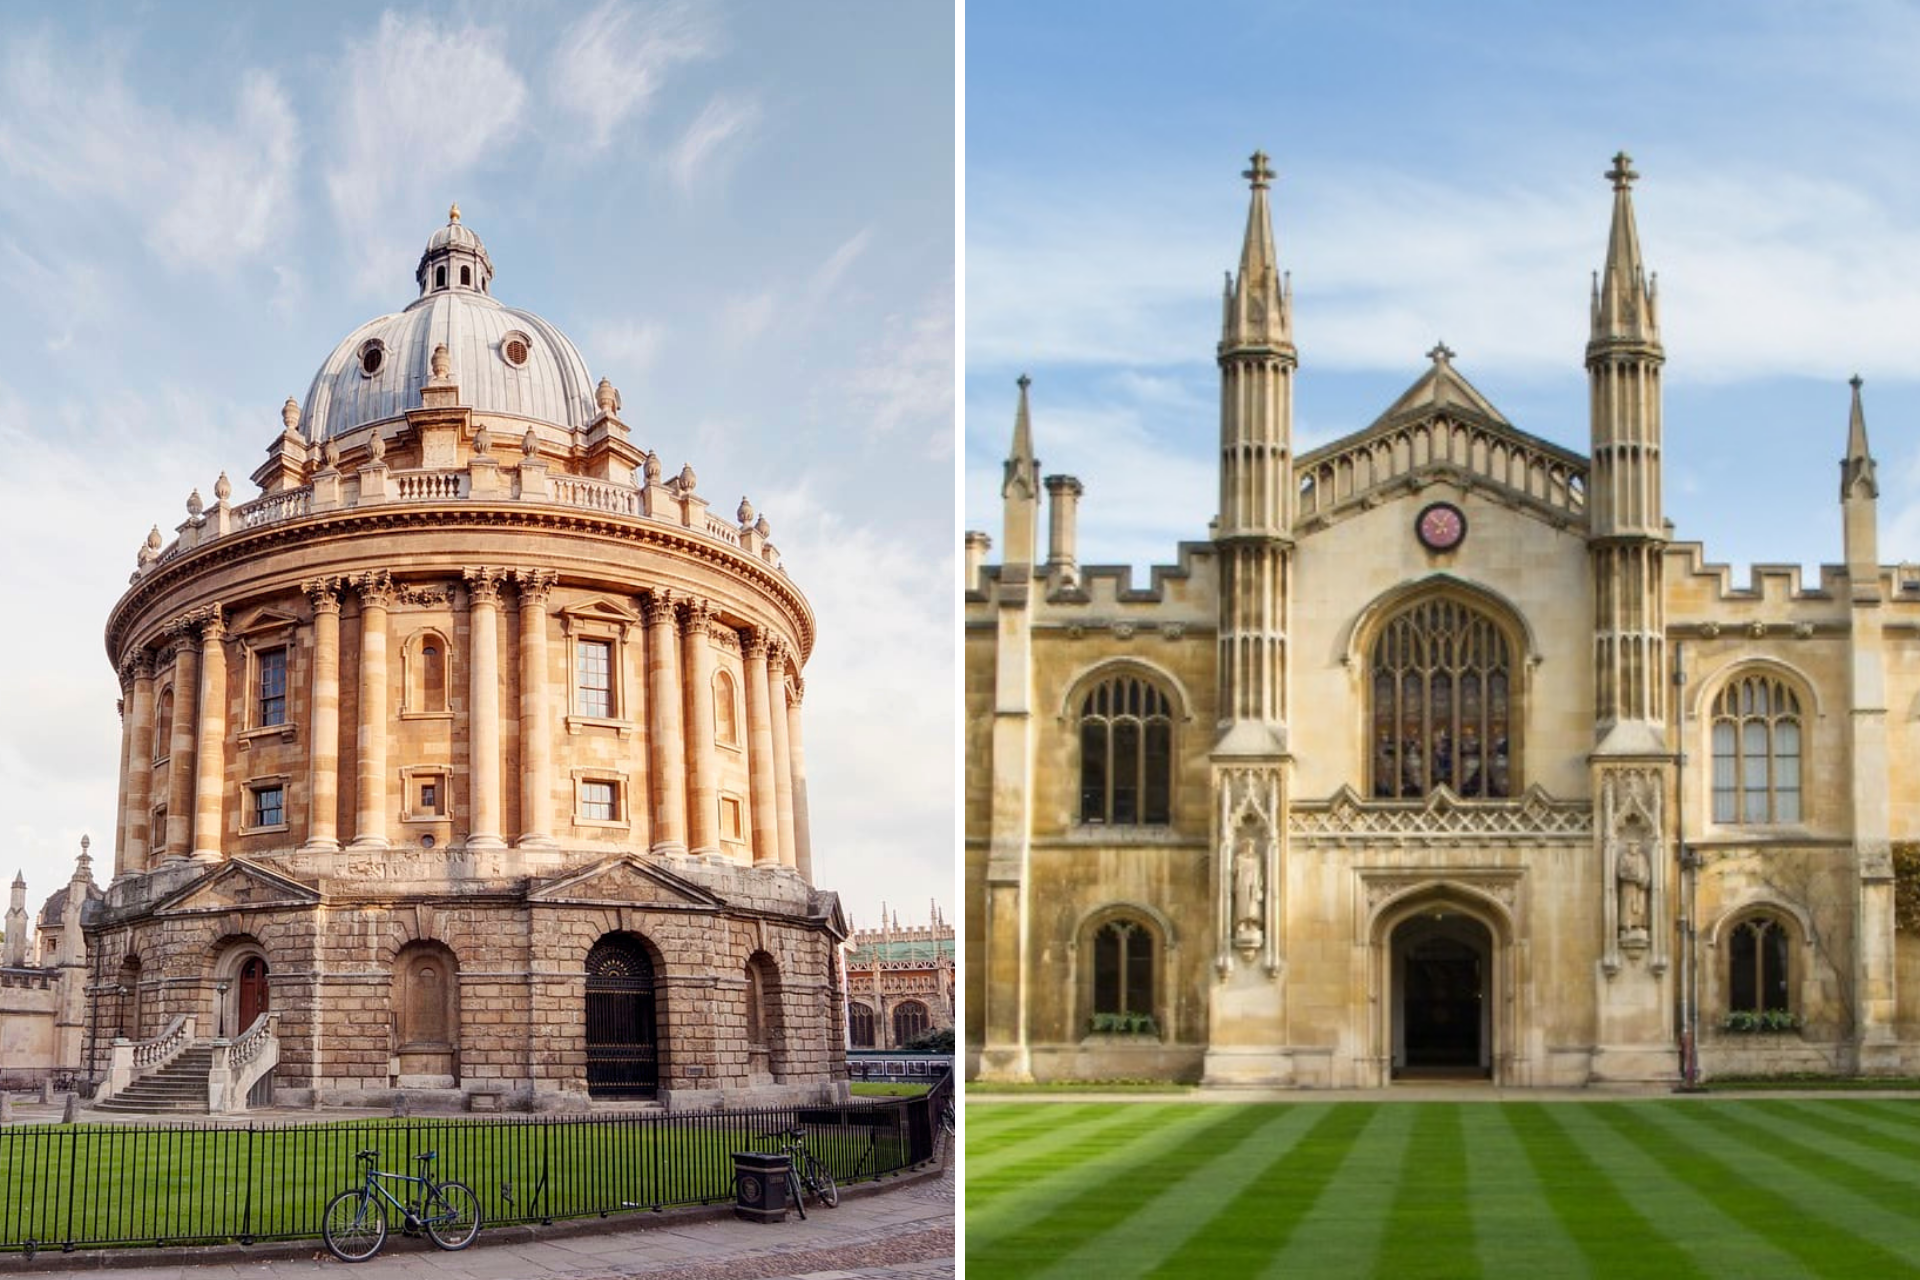 Como surgiu a rivalidade entre Oxford e Cambridge?